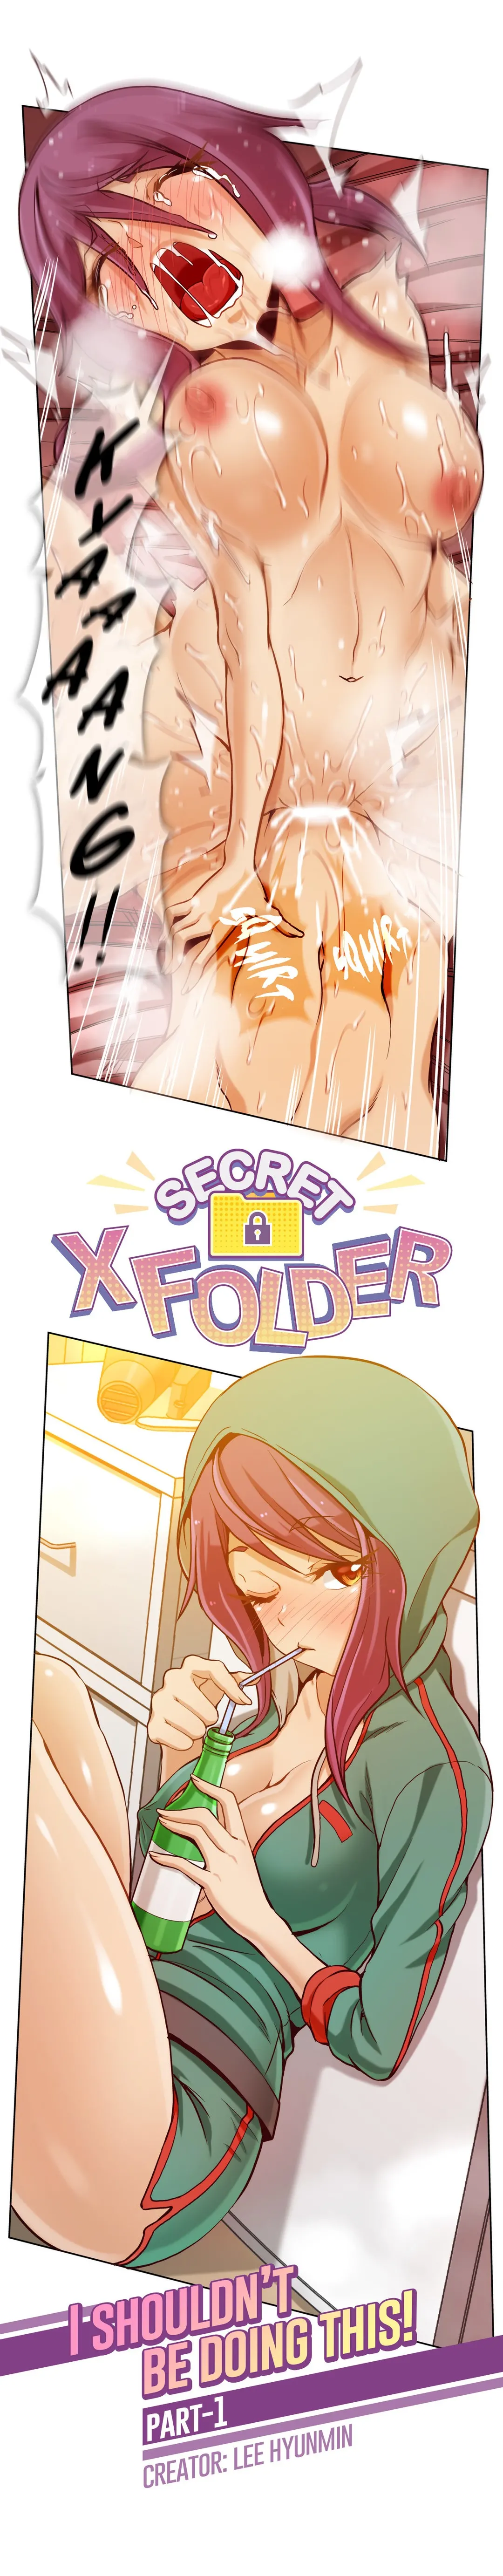 Secret X Folder - Chapter 8 Page 7